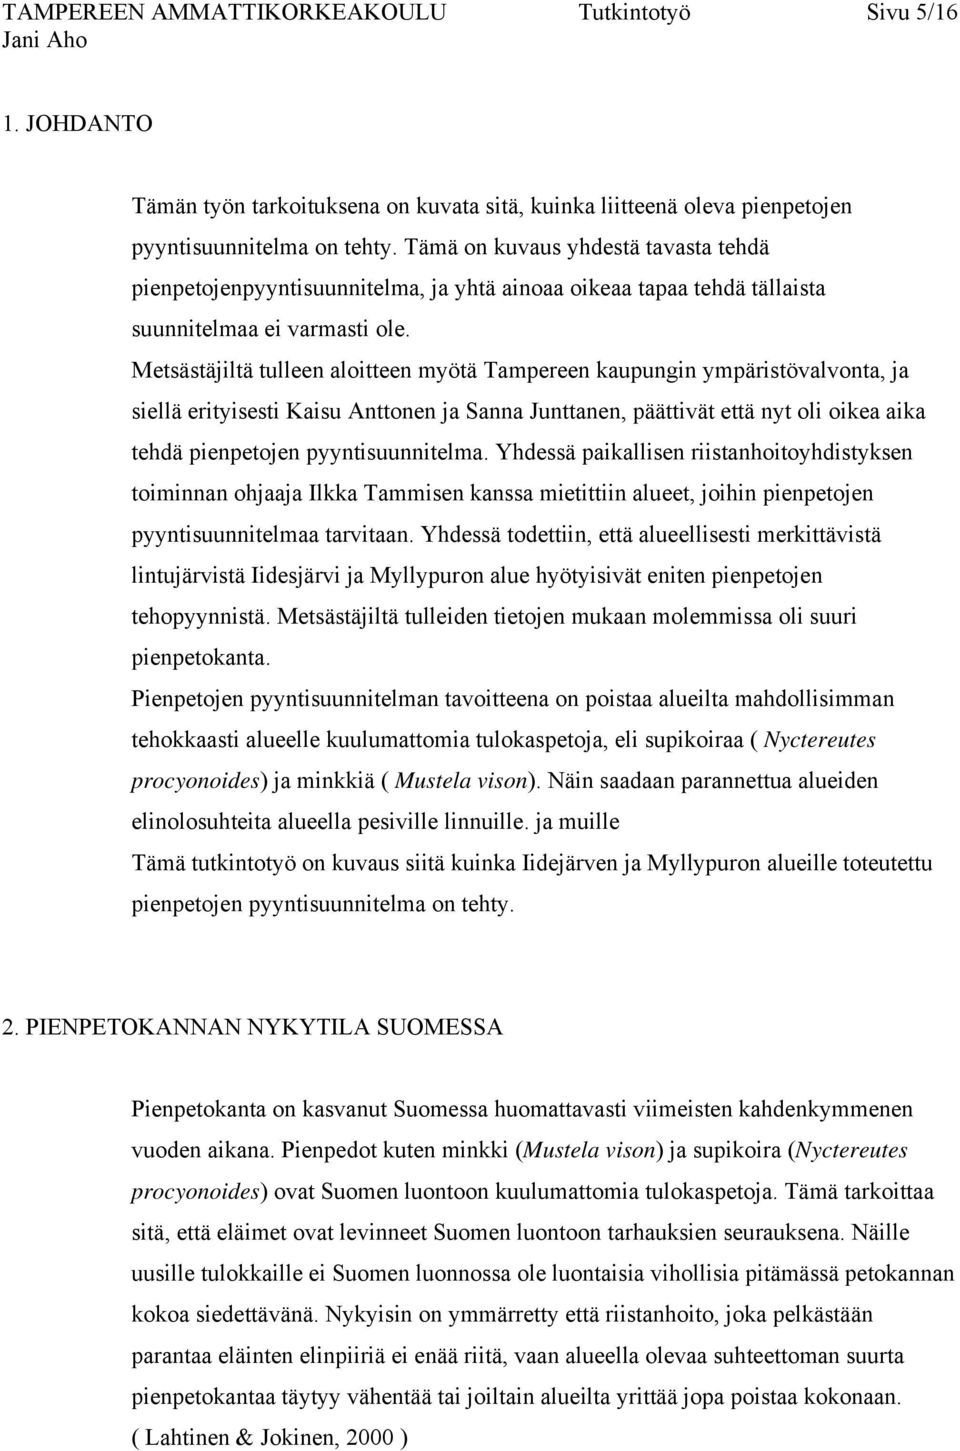 Metsästäjiltä tulleen aloitteen myötä Tampereen kaupungin ympäristövalvonta, ja siellä erityisesti Kaisu Anttonen ja Sanna Junttanen, päättivät että nyt oli oikea aika tehdä pienpetojen